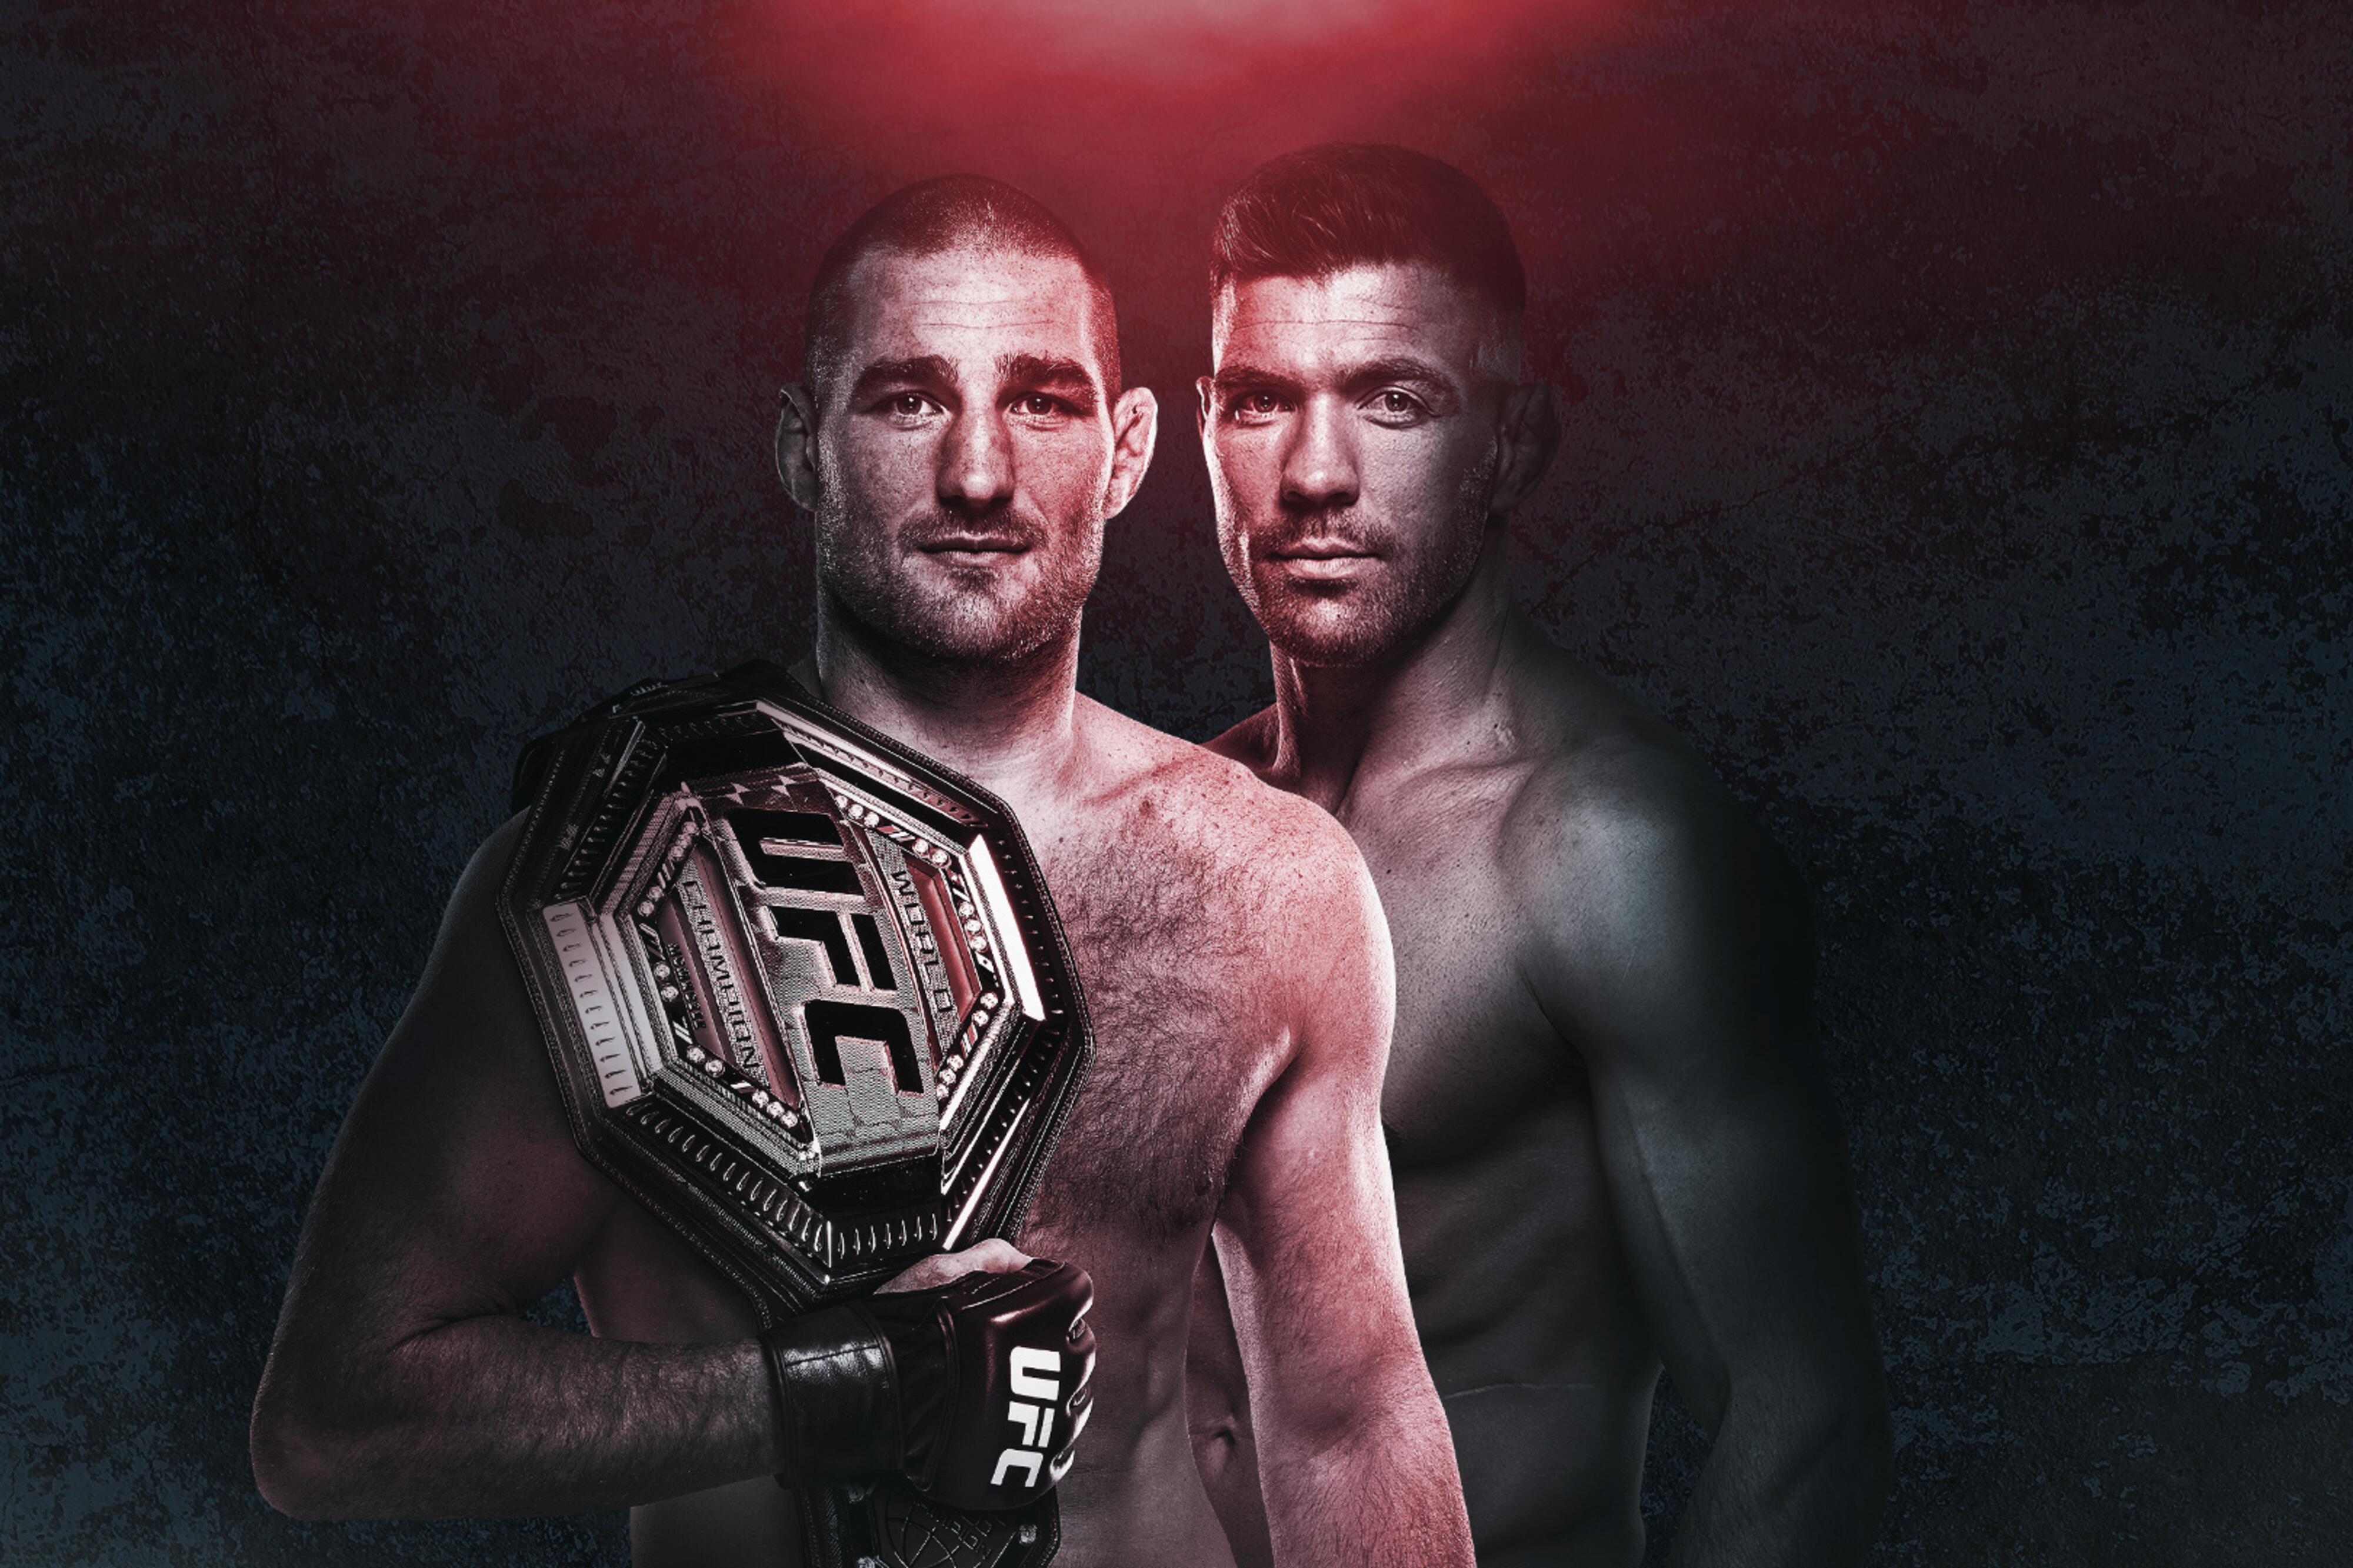 UFC 297 - Toronto - Poster et affiche